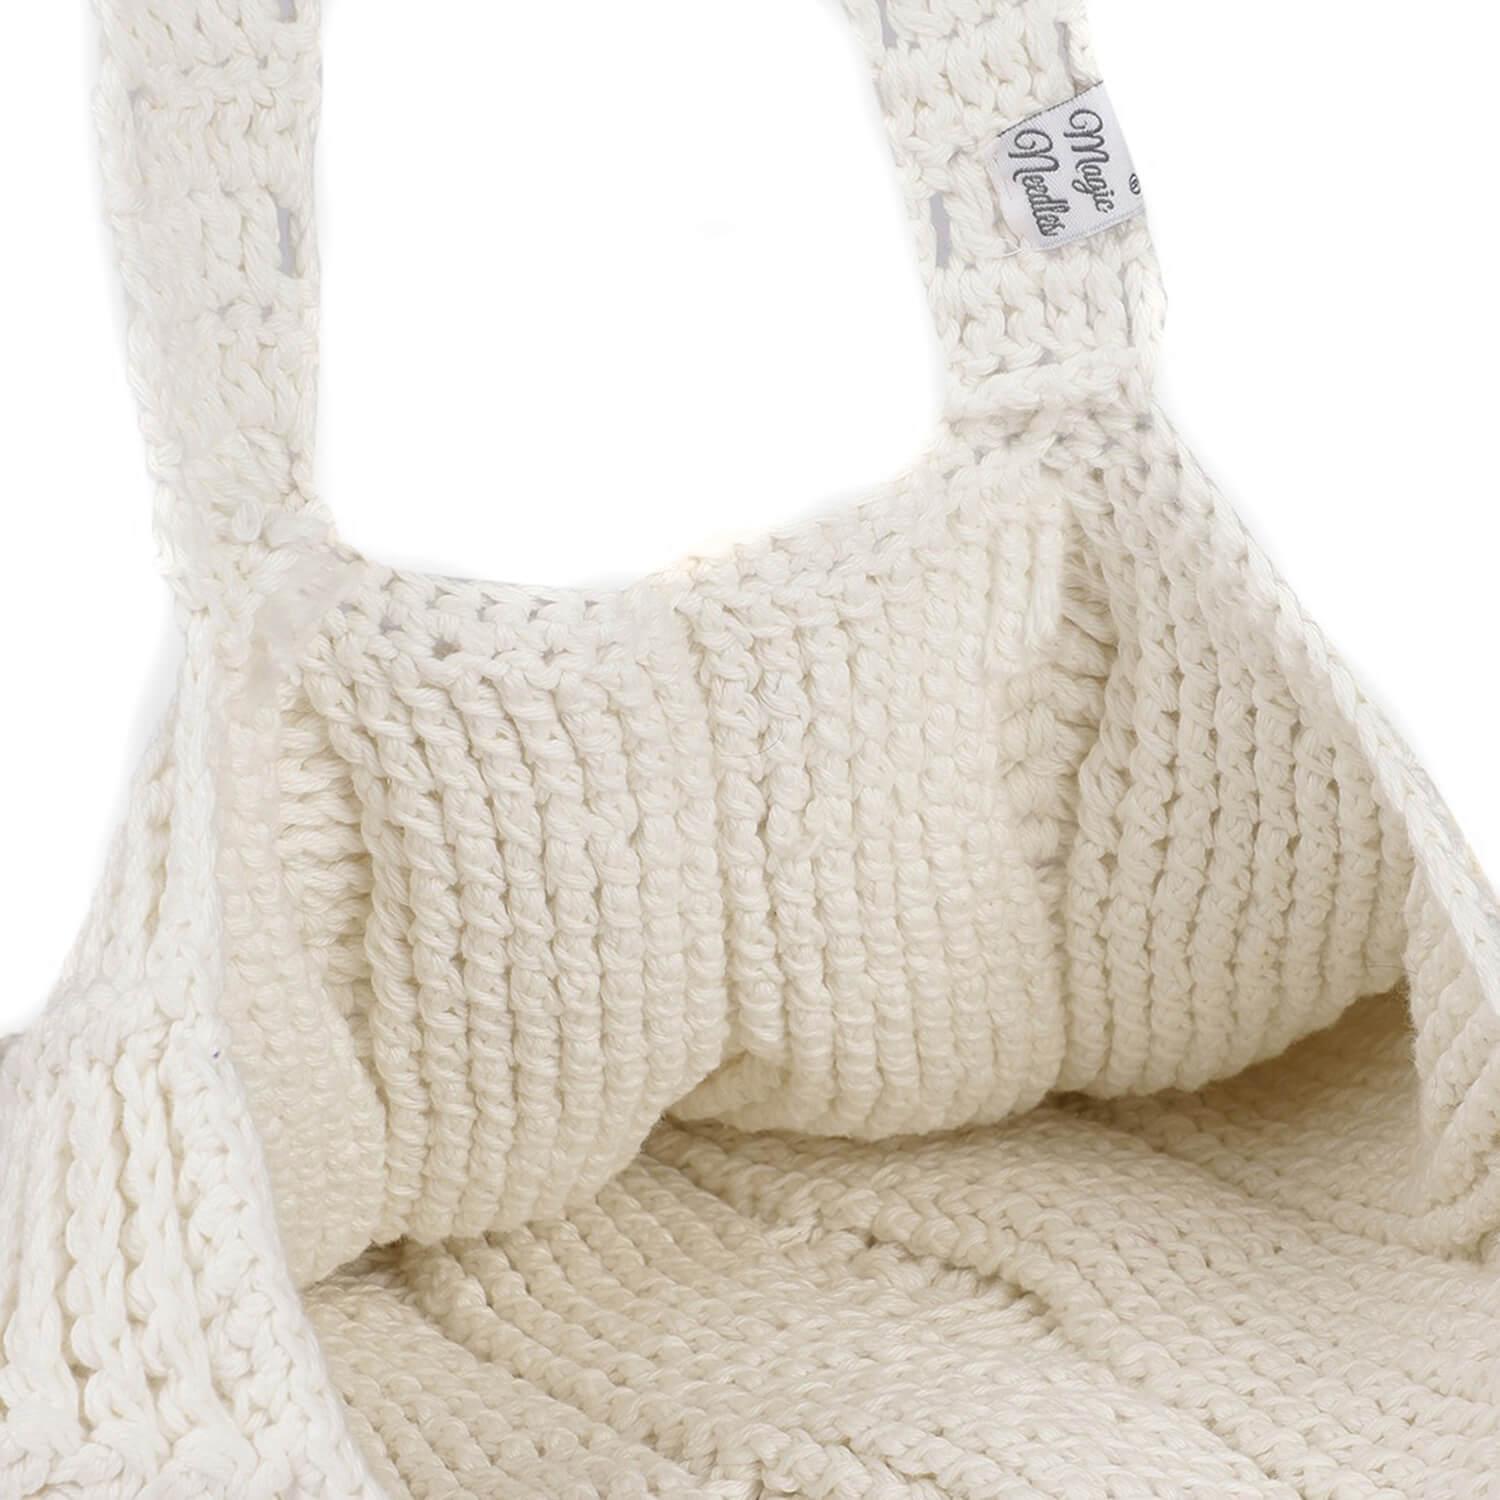 Handmade Crochet Market Bag - White 2811